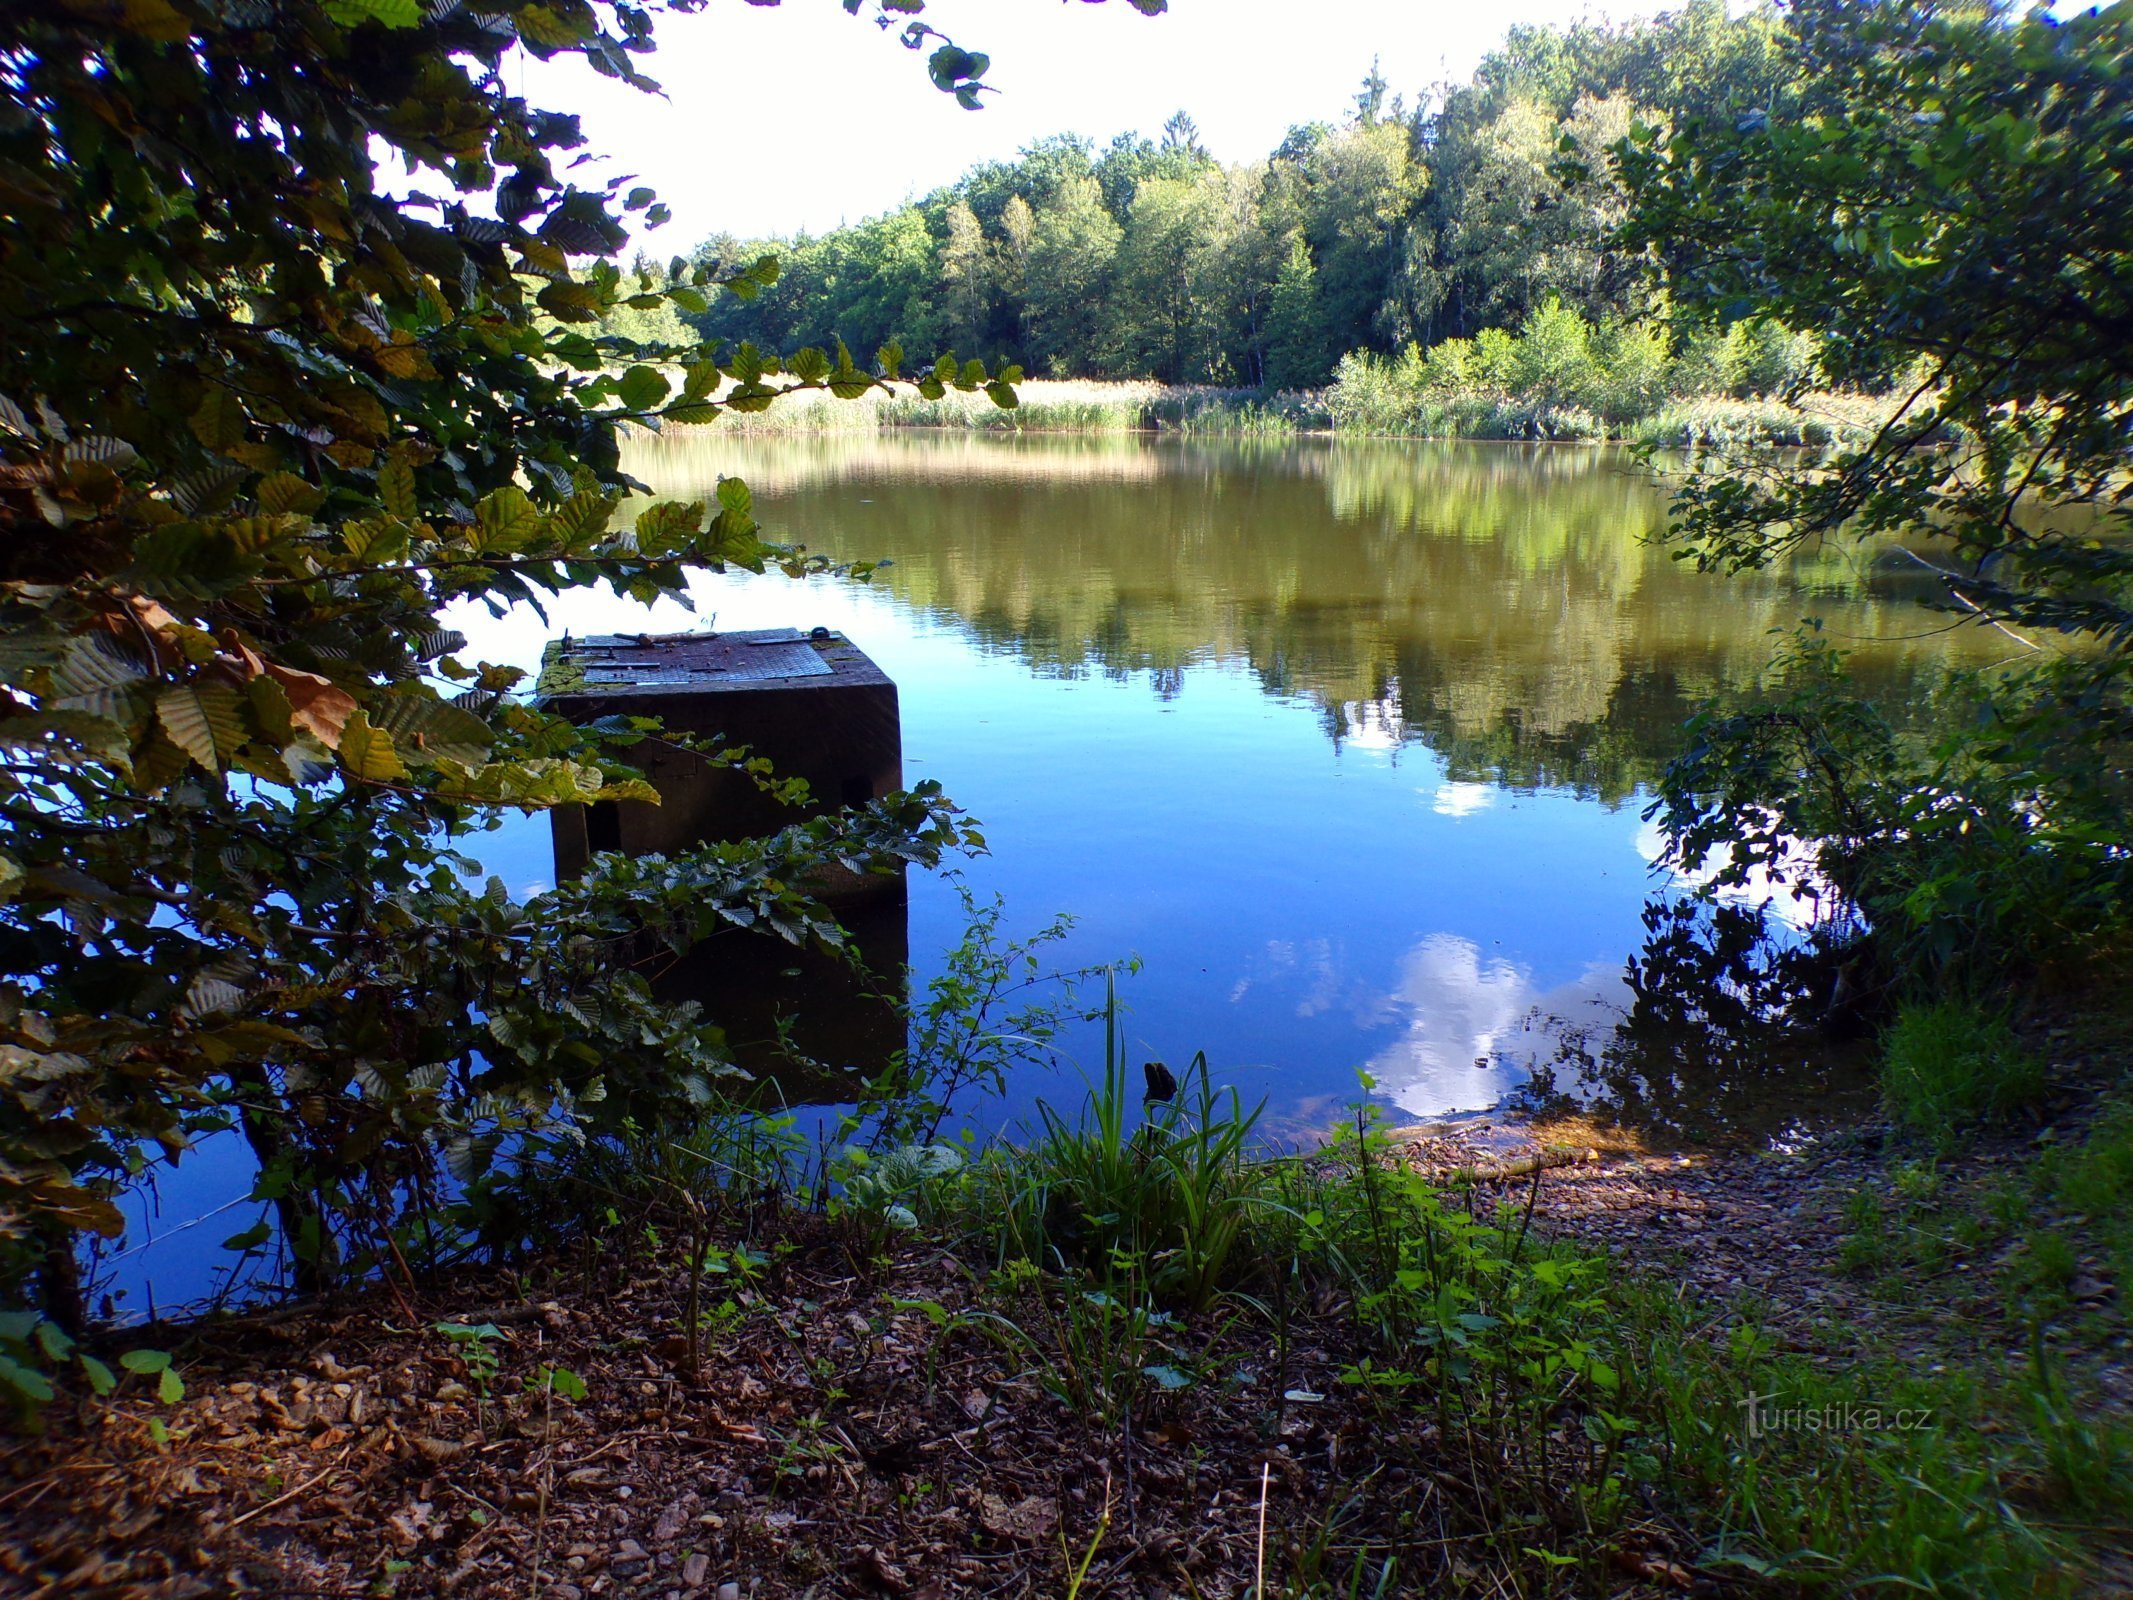 Hlinský rybník (Petrovice nad Orlicí, 1.9.2022. XNUMX. XNUMX)